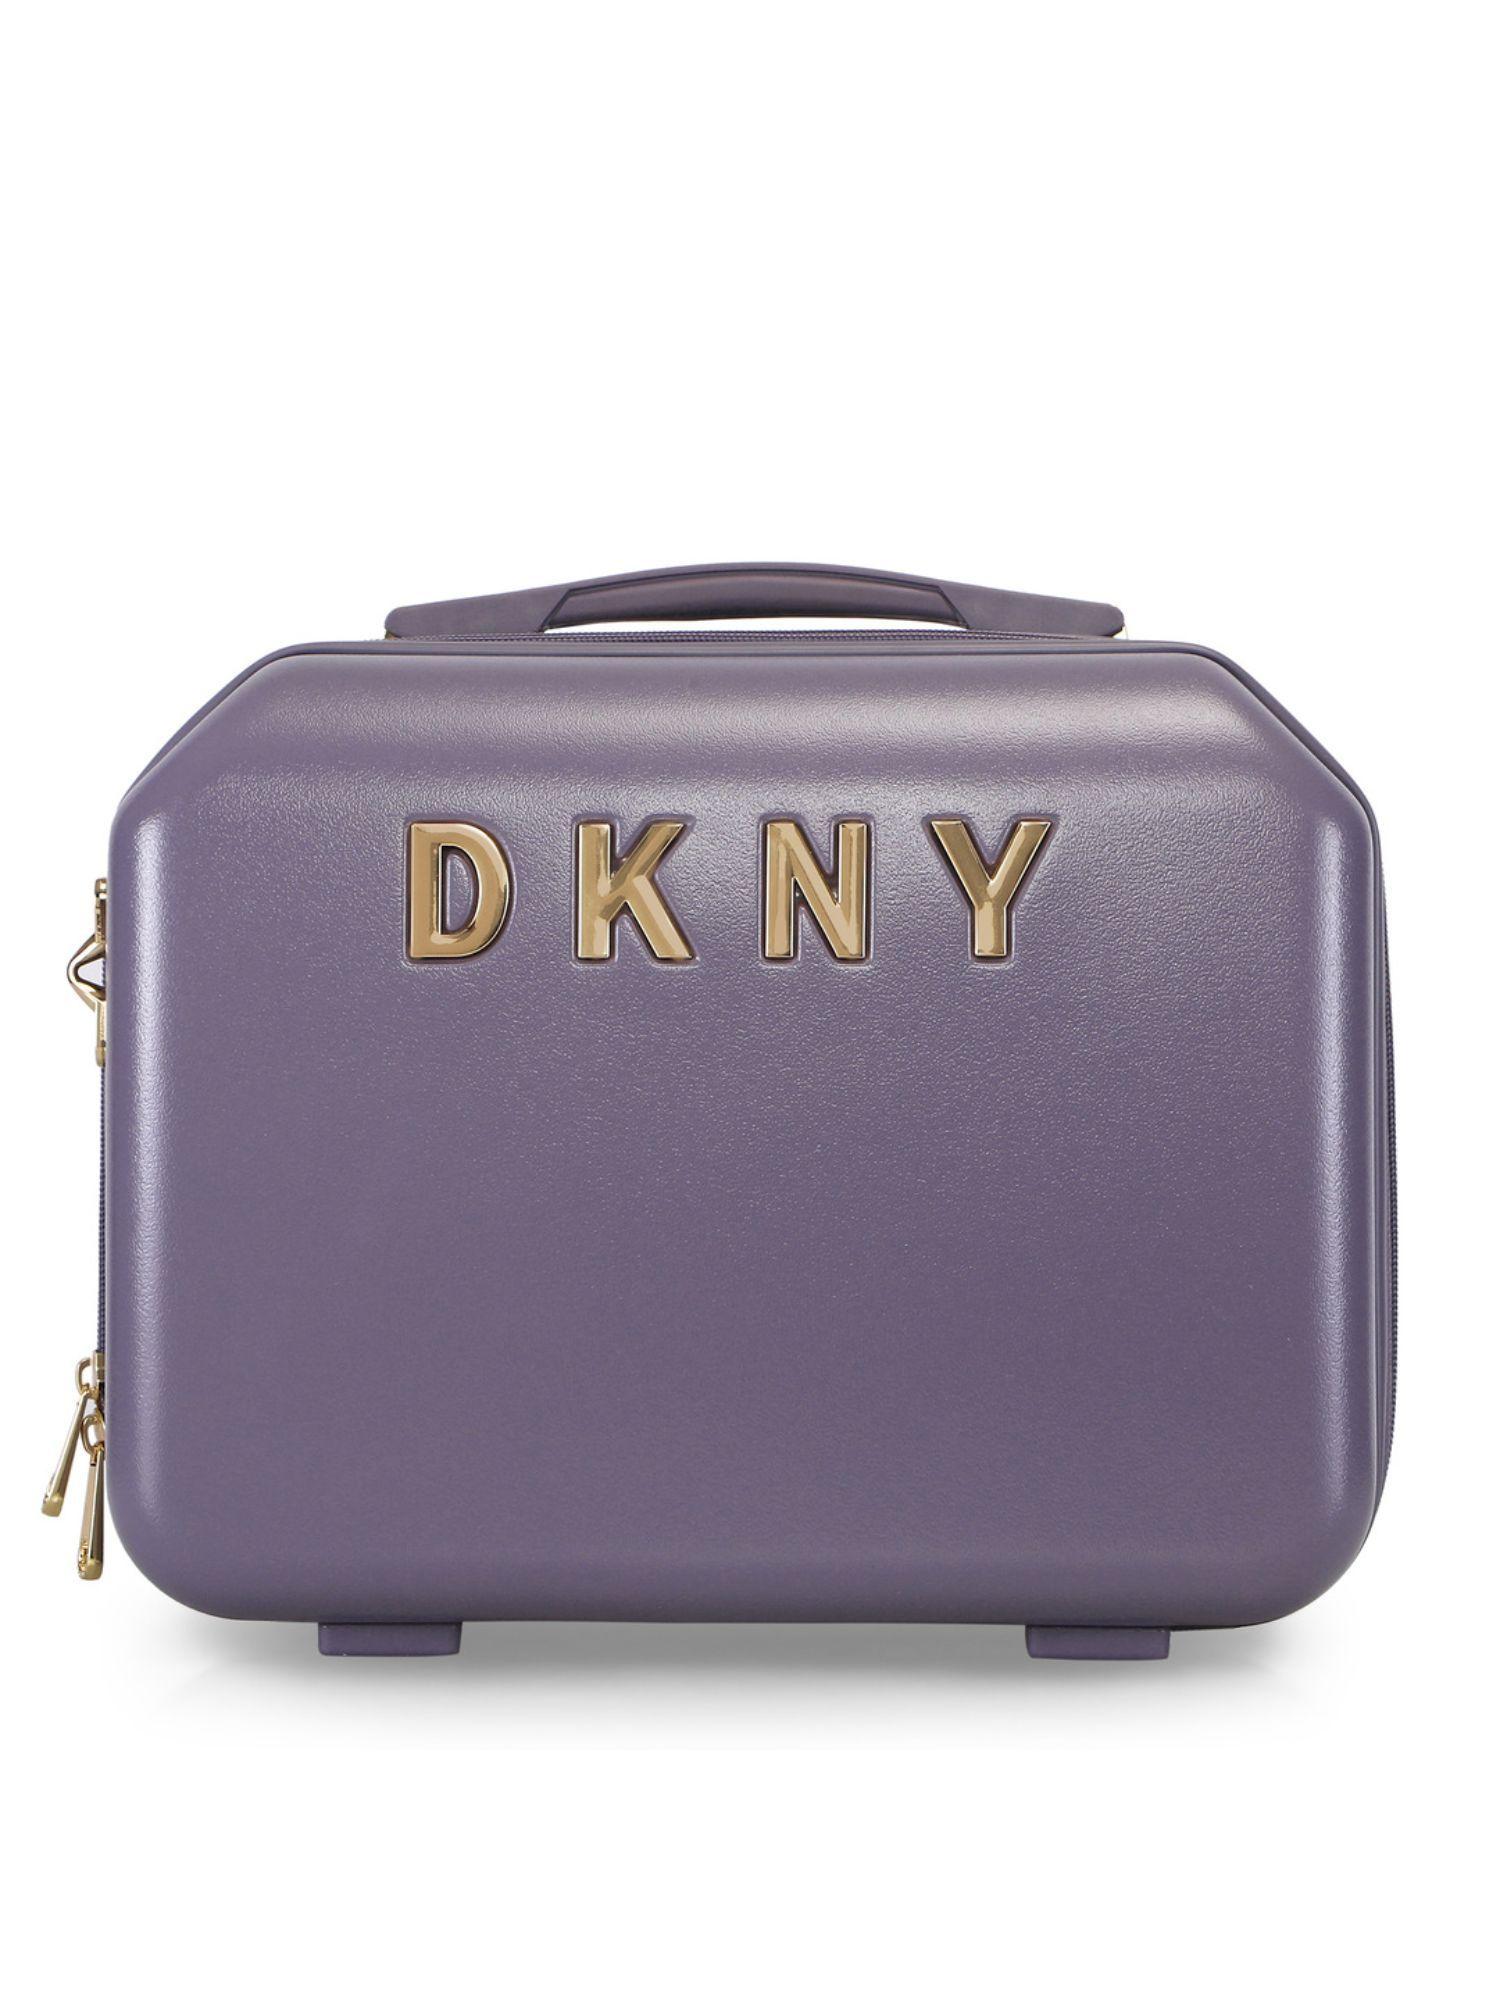 allure range purple hard beauty case